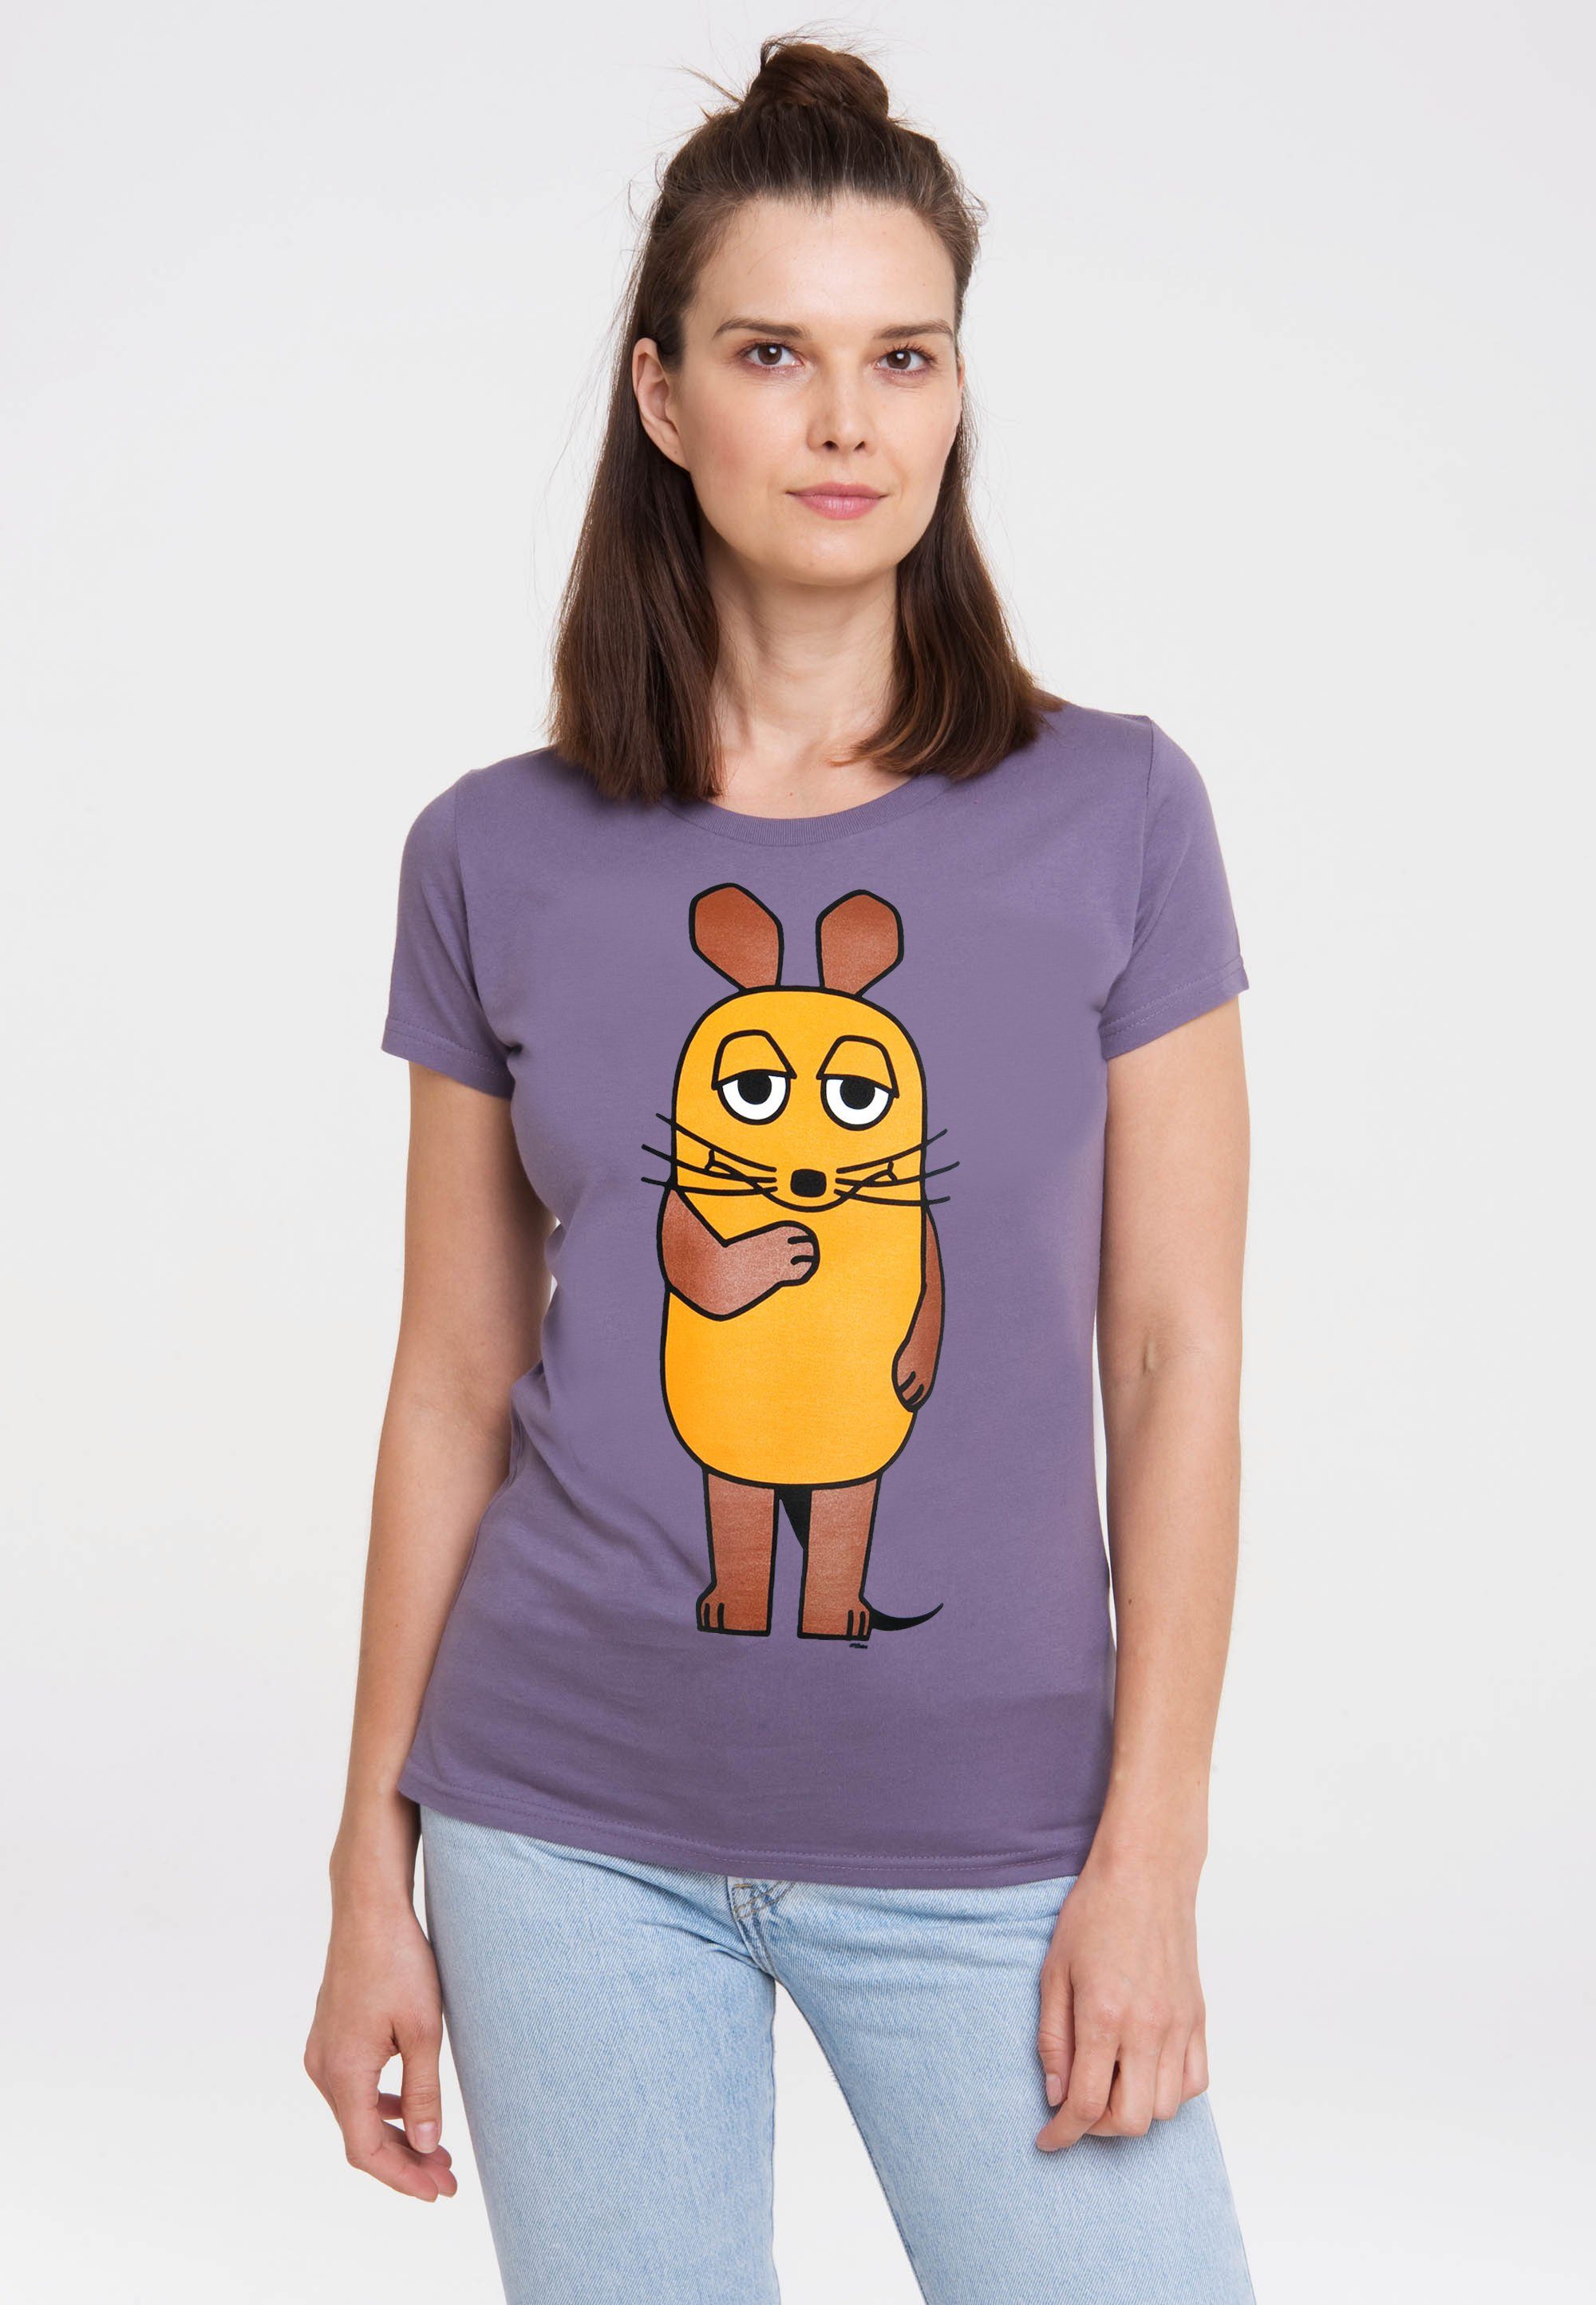 LOGOSHIRT T-Shirt Sendung mit der Maus mit coolem Maus-Print | T-Shirts